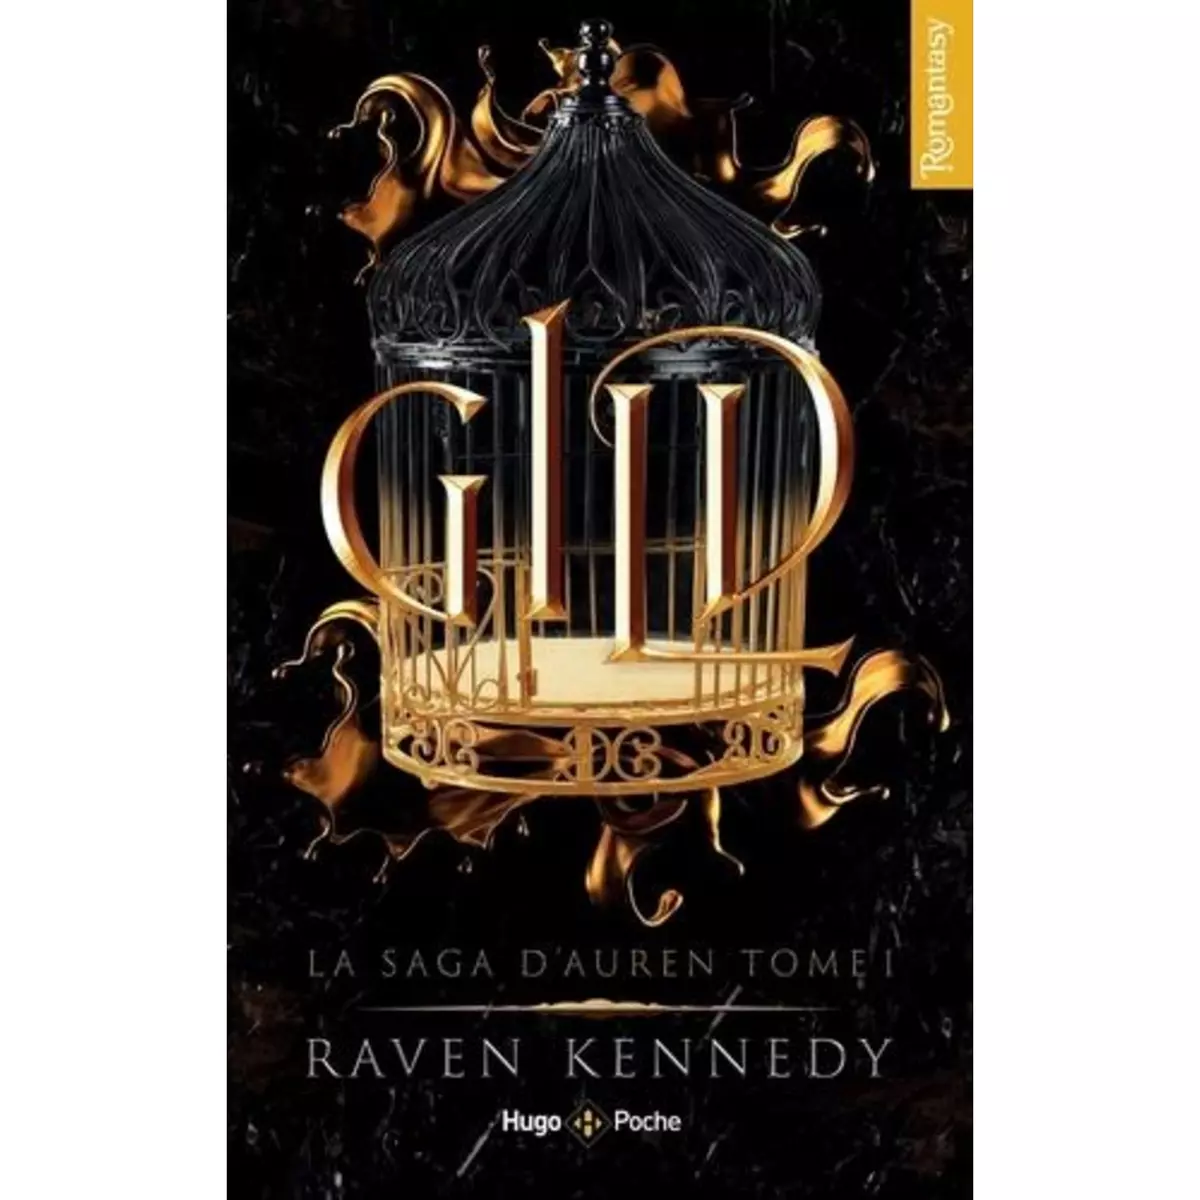  LA SAGA D'AUREN TOME 1 : GILD, Kennedy Raven